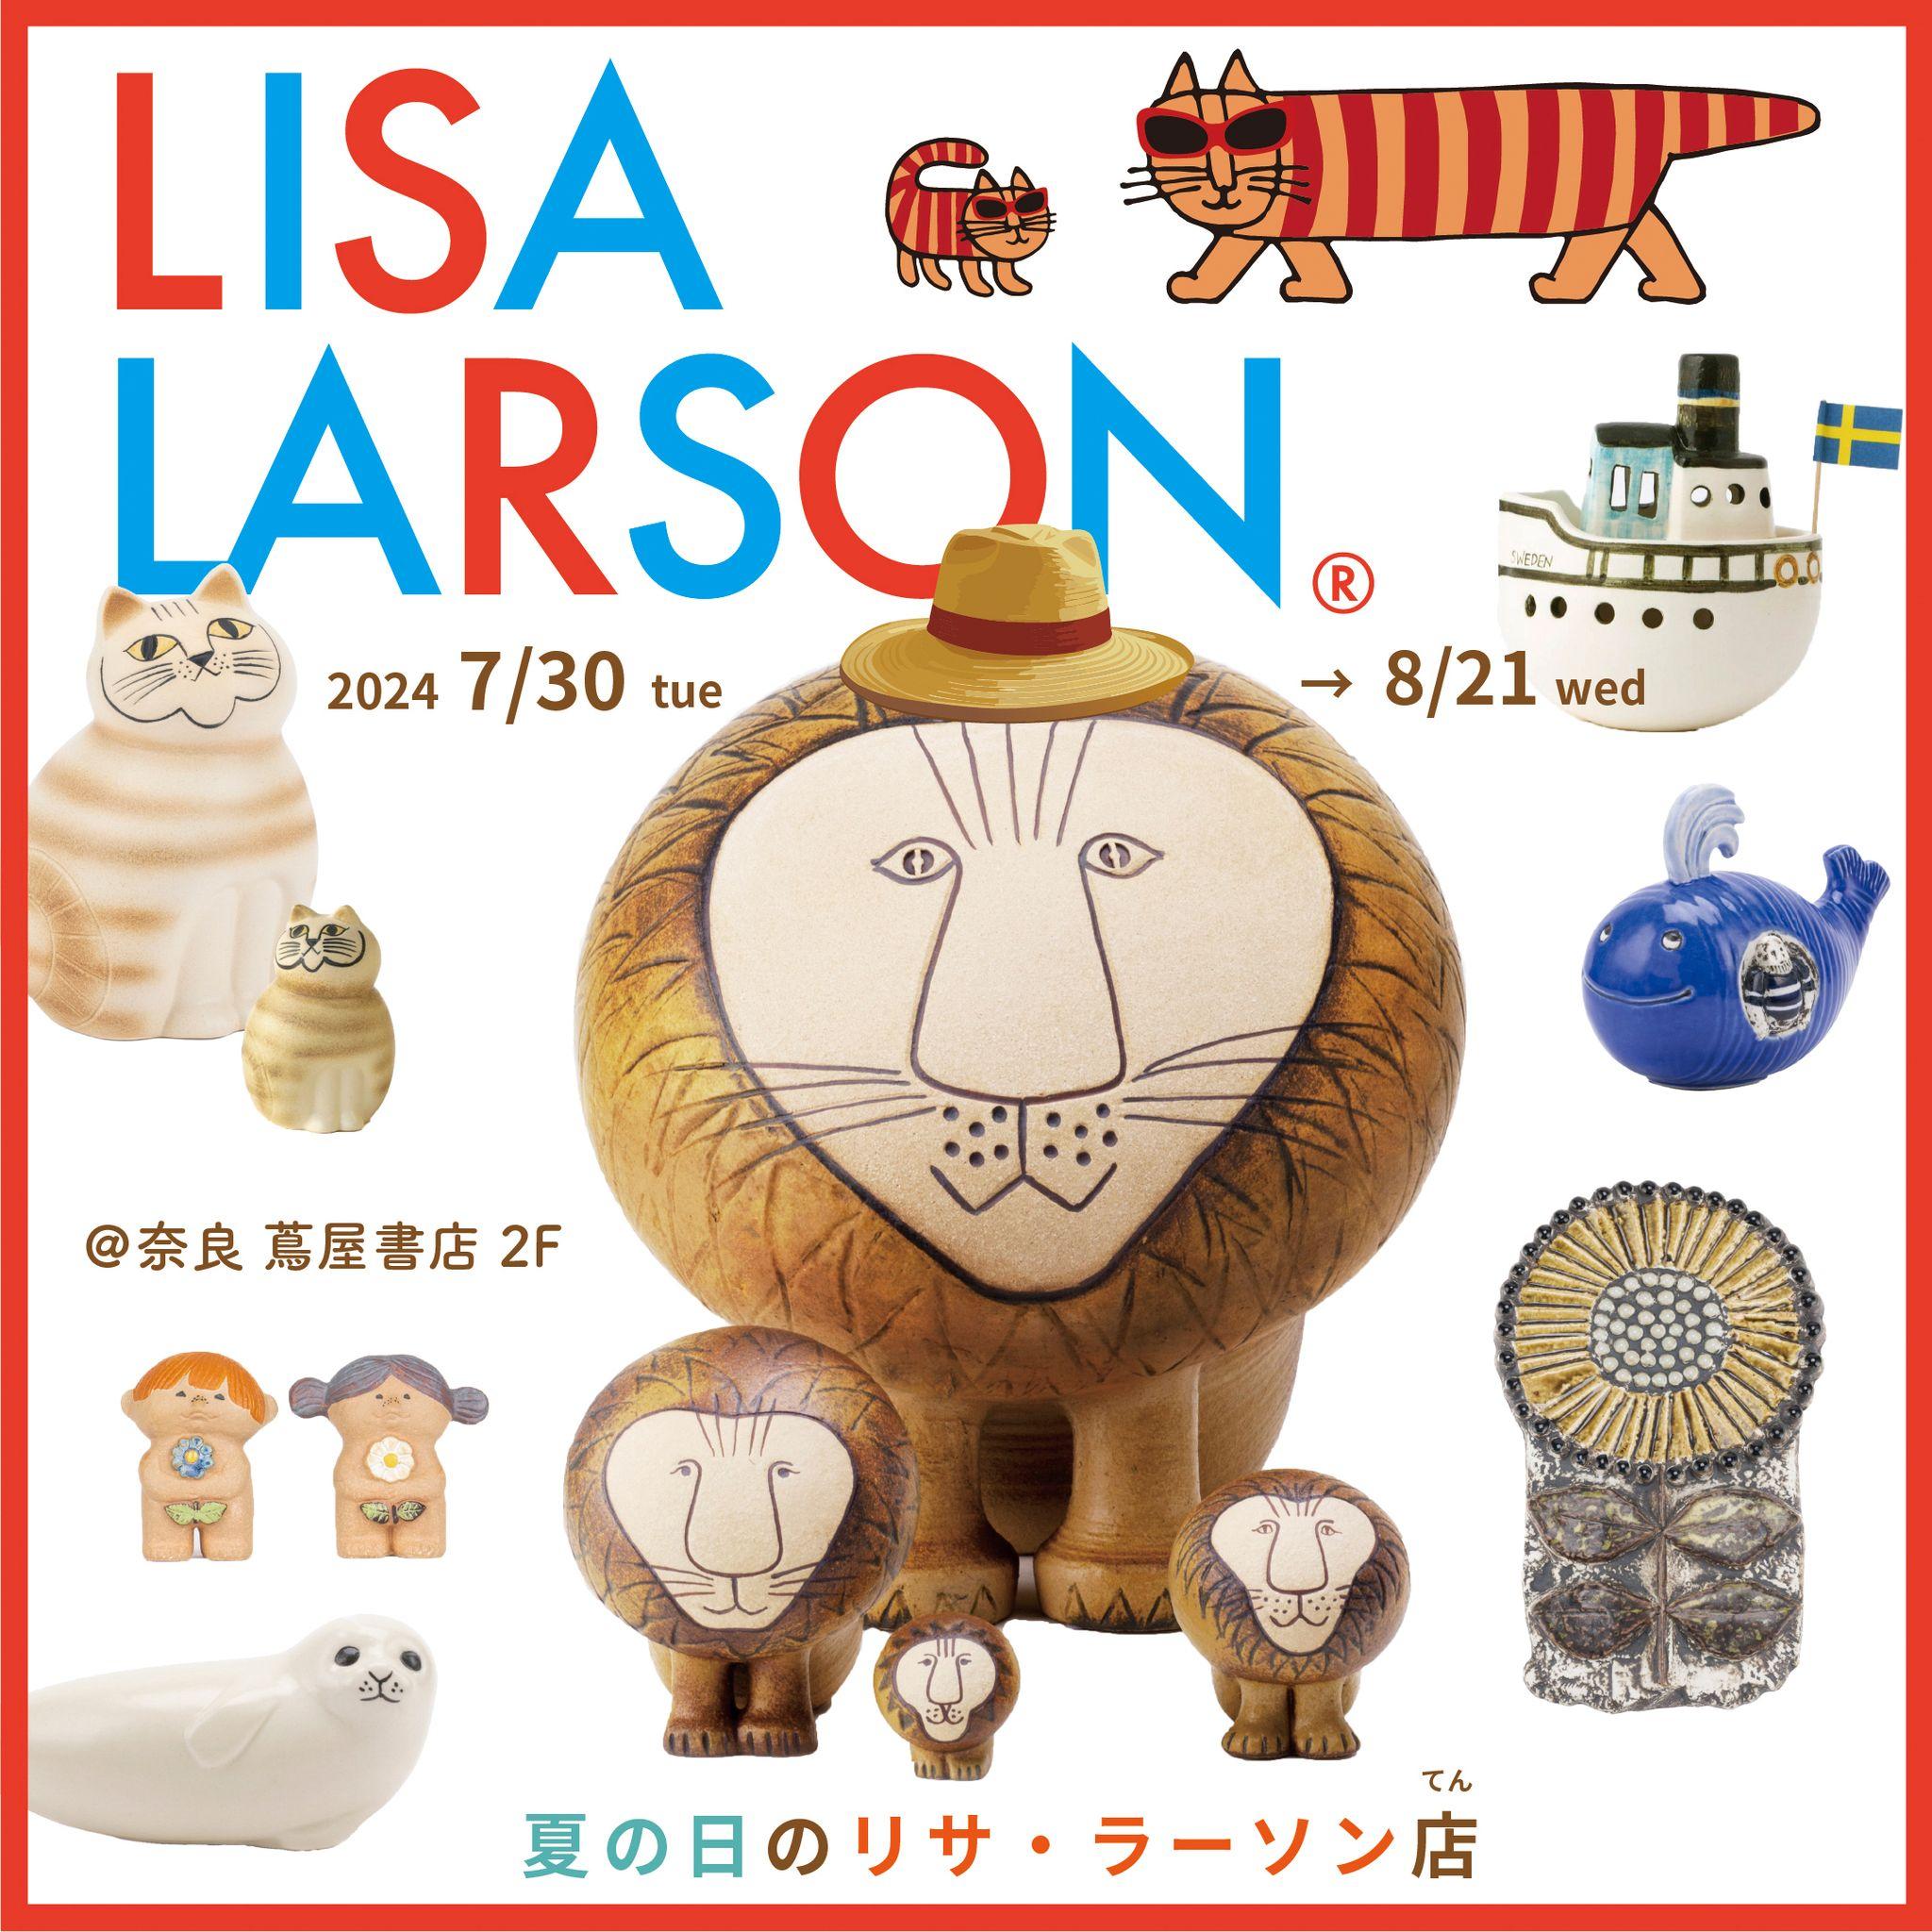 【夏休みPOP UP】奈良 蔦屋書店にて、スウェーデンの陶芸家リサ・ラーソンのポップアップイベントが開催決定！